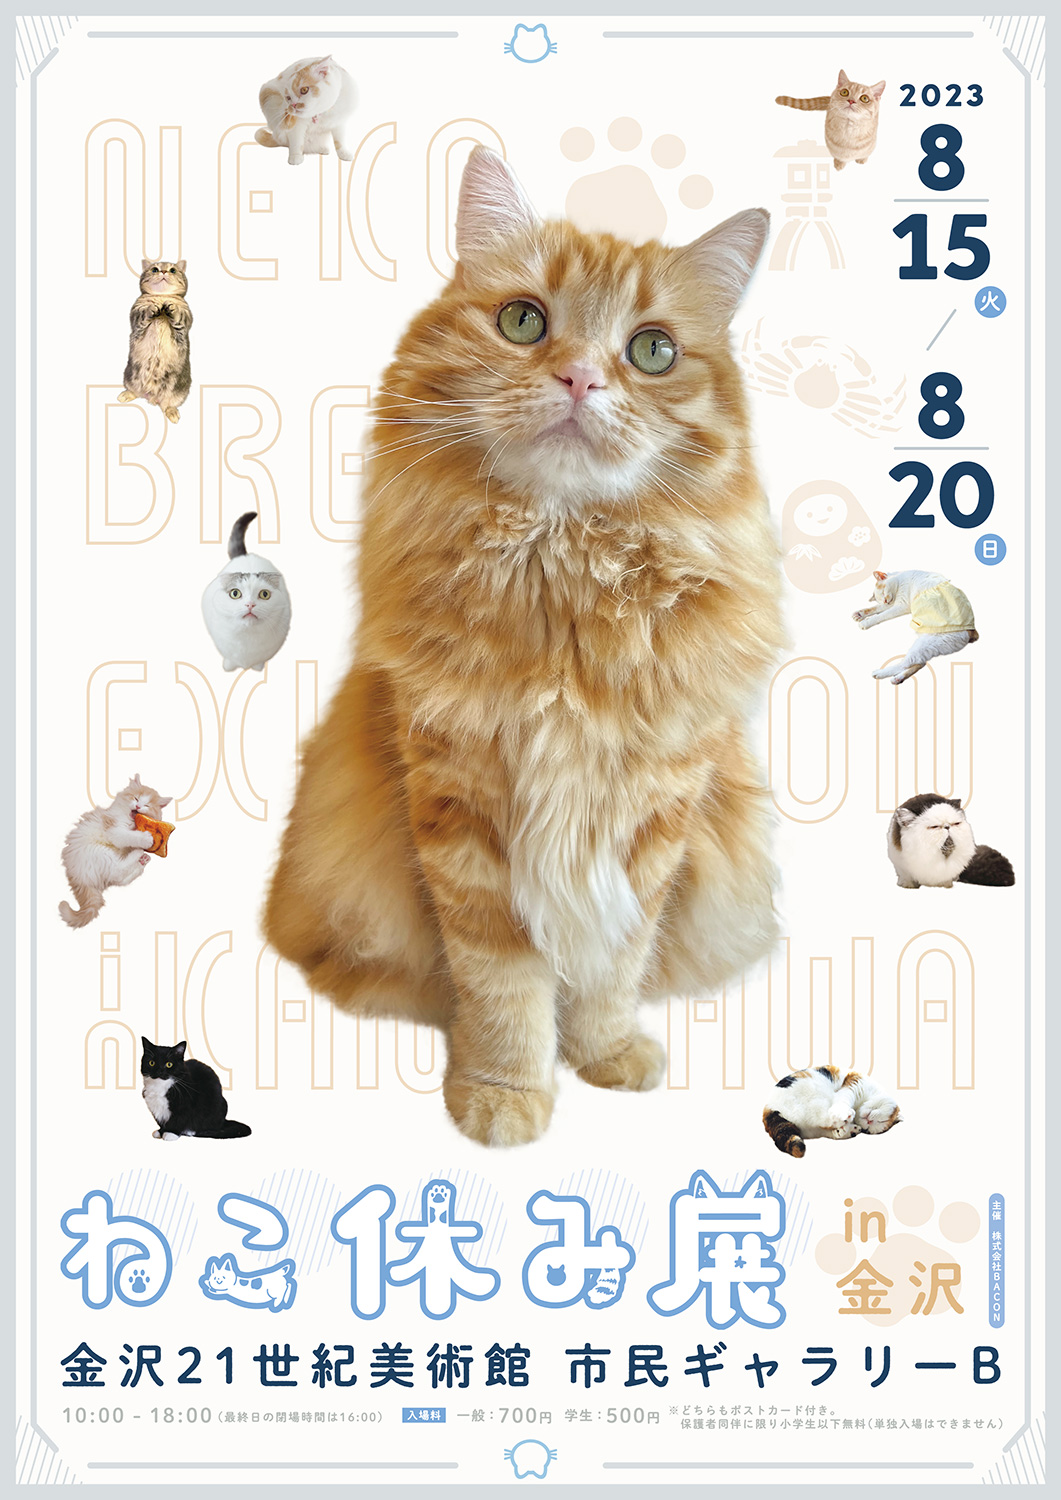 猫の合同写真展「ねこ休み展 2023 in 金沢」